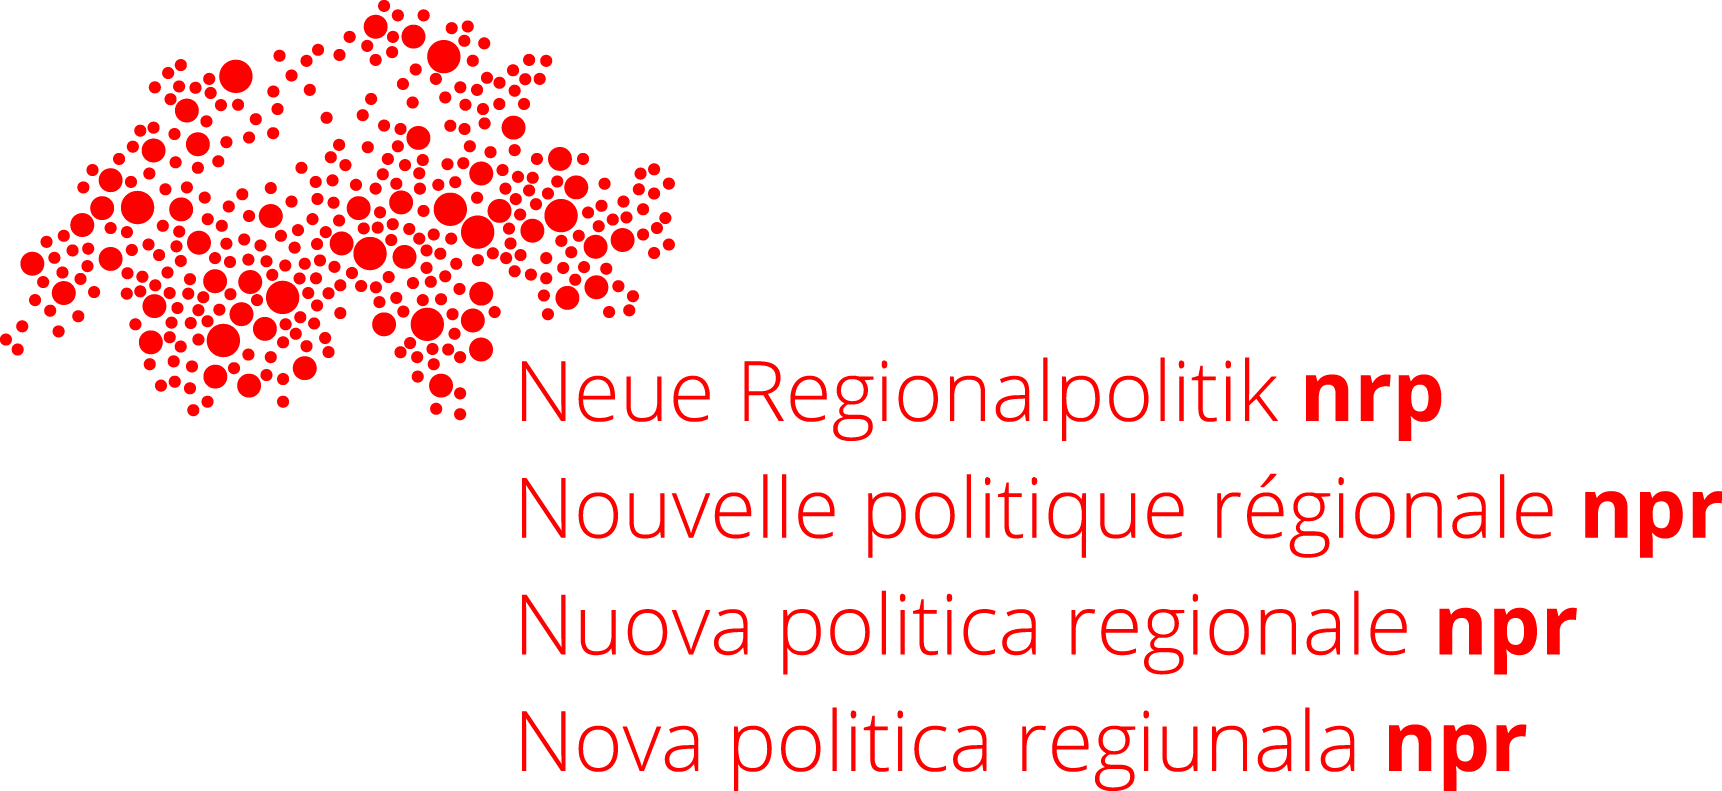 logo della nuova politica regionale npr